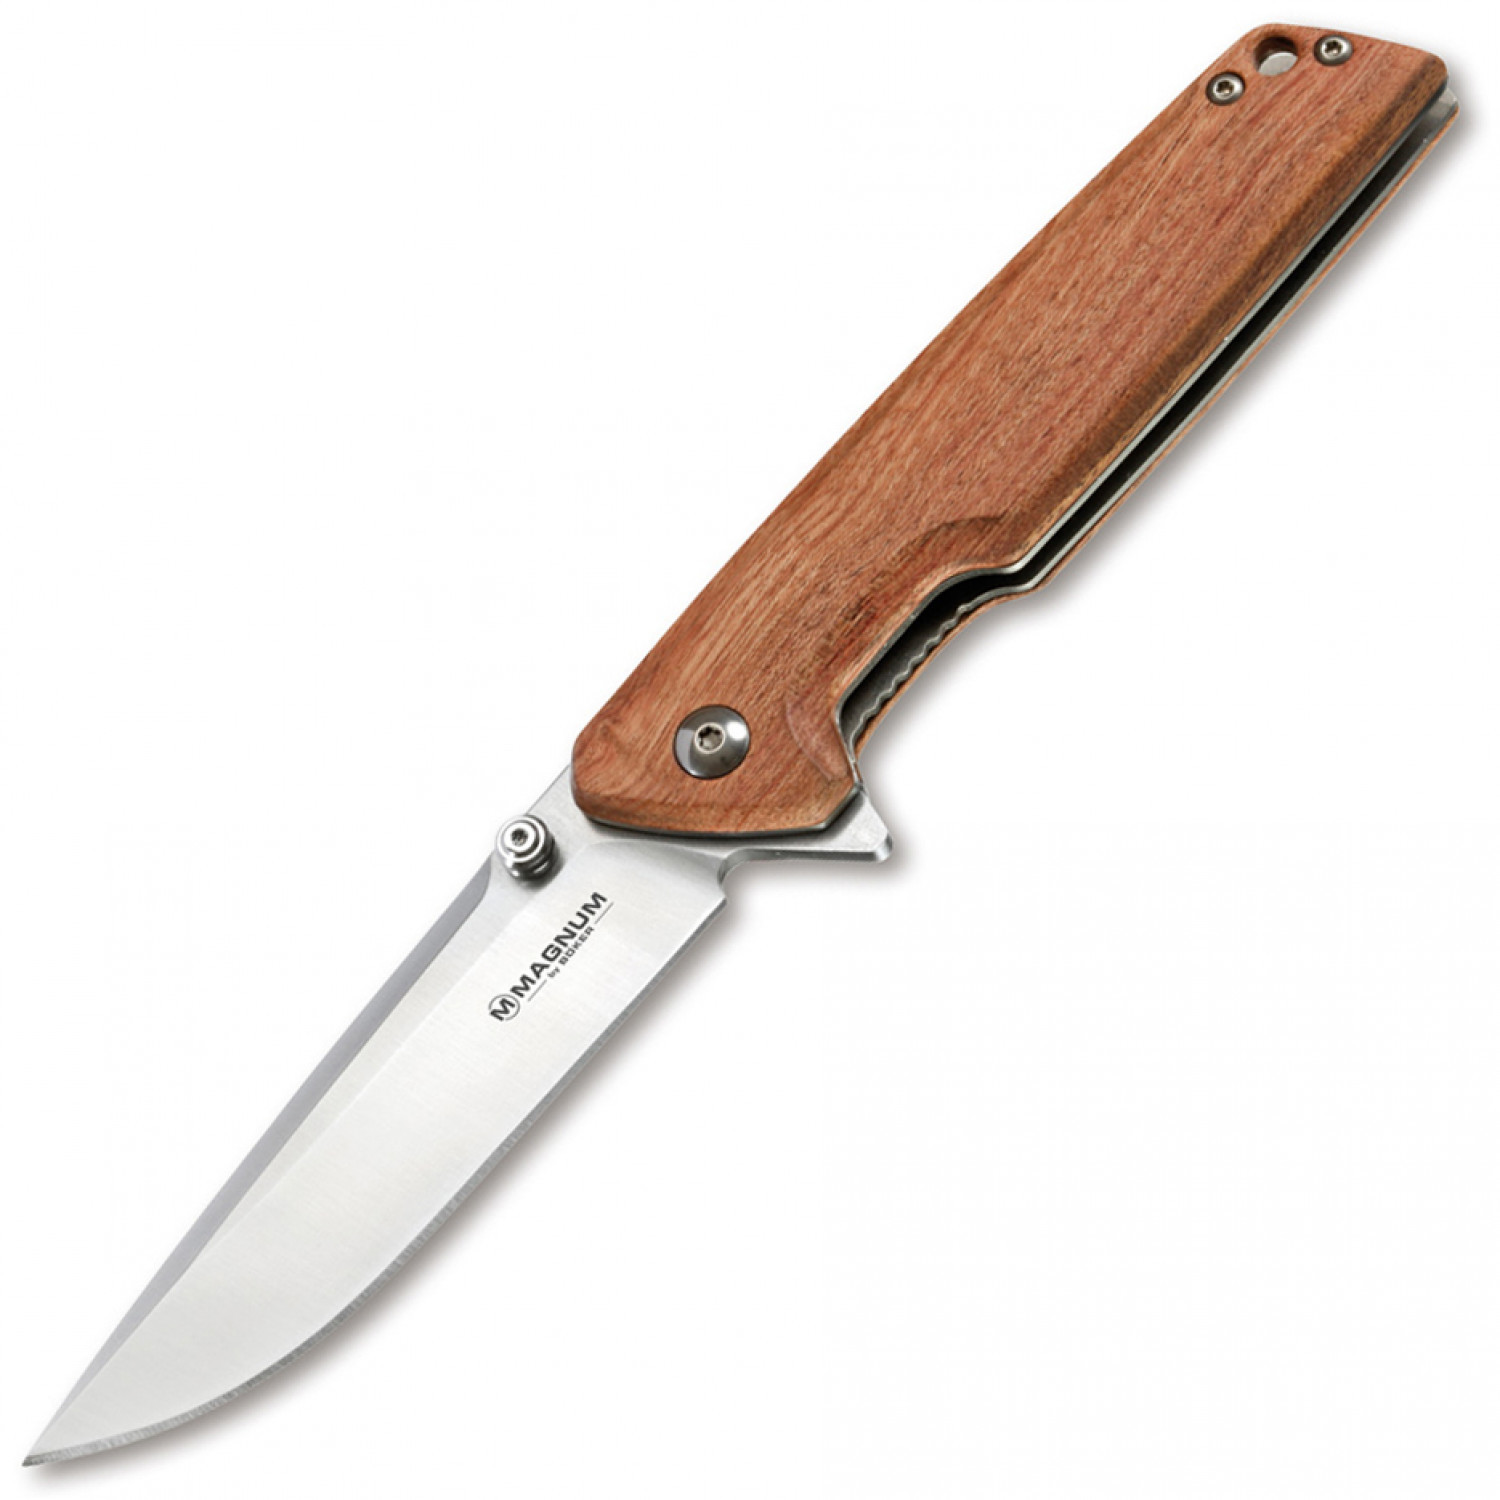 Складной нож Magnum Straight Brother Wood - Boker 01MB723, сталь 440A Satin, рукоять дерево, коричневый